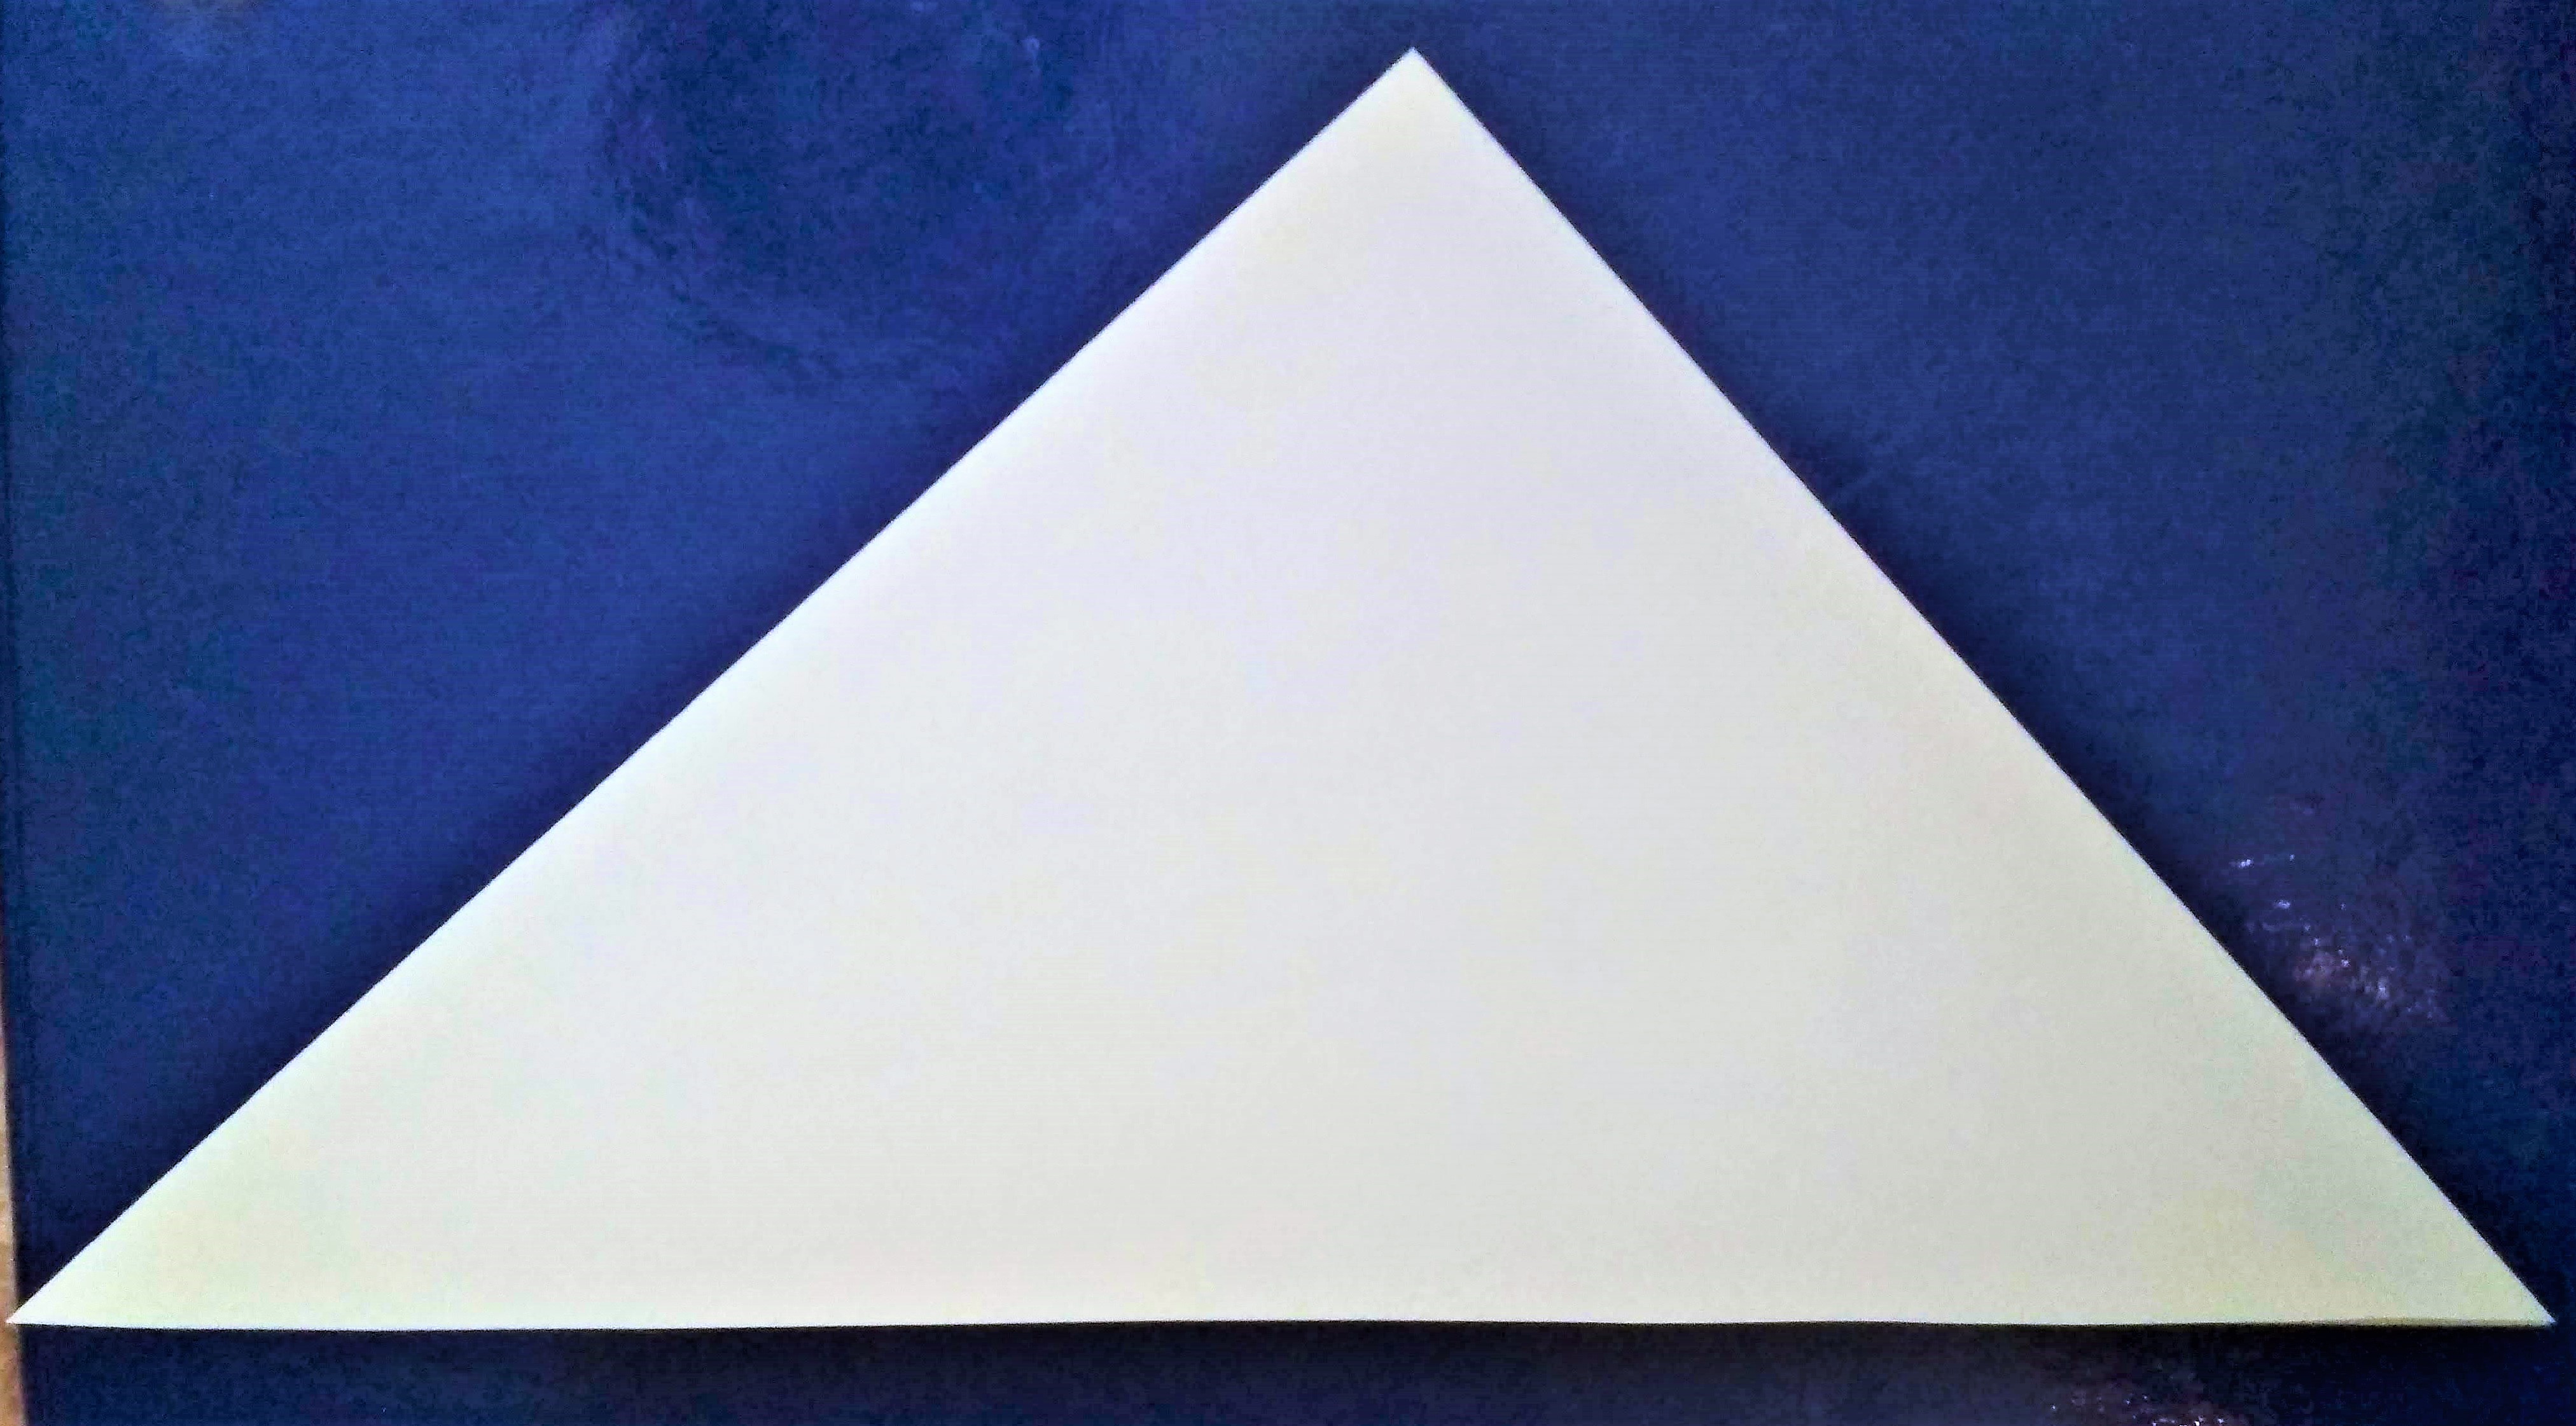 trójkąt